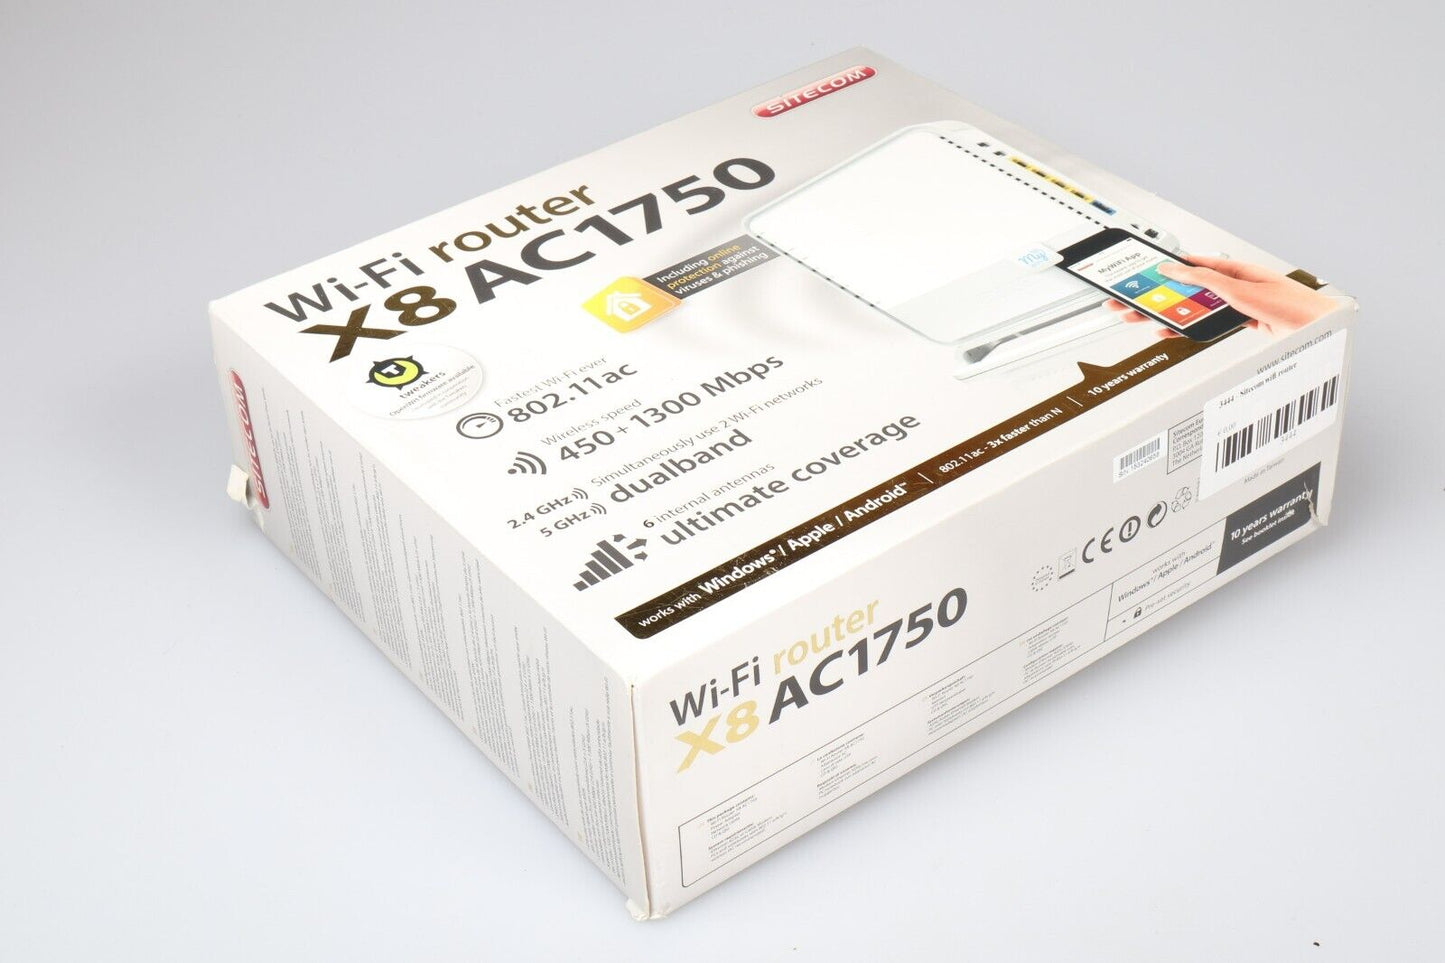 Sitecom Wifi Router | X8 AC1750